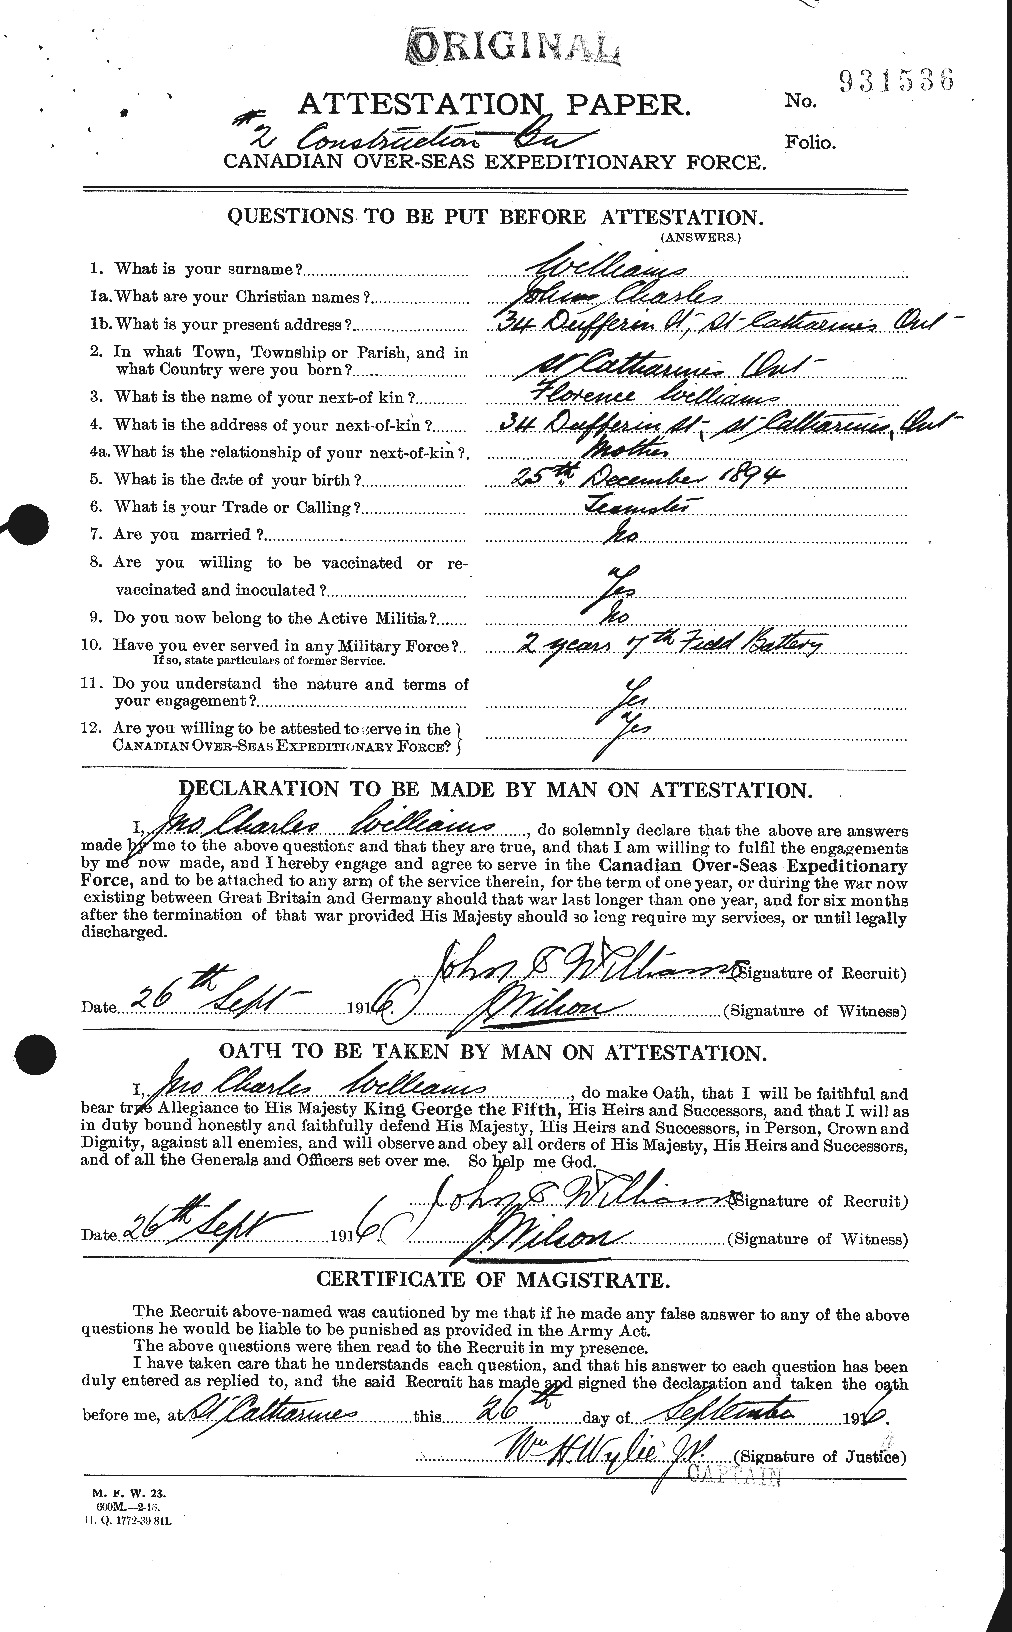 Dossiers du Personnel de la Première Guerre mondiale - CEC 672972a